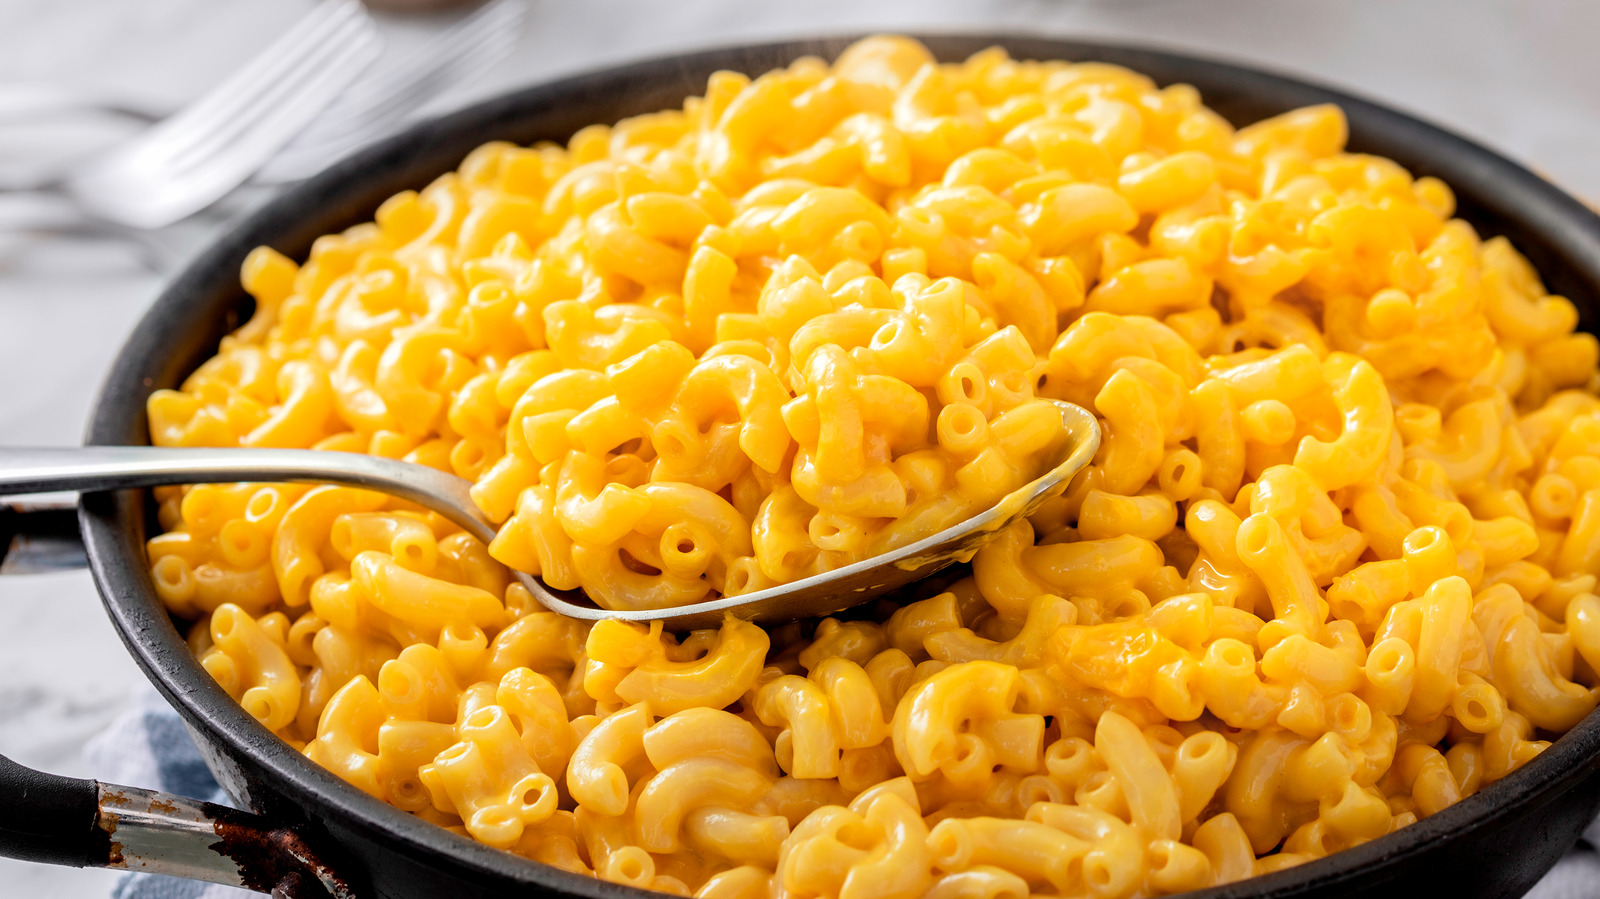 How to Make Kraft Macaroni and Cheese 